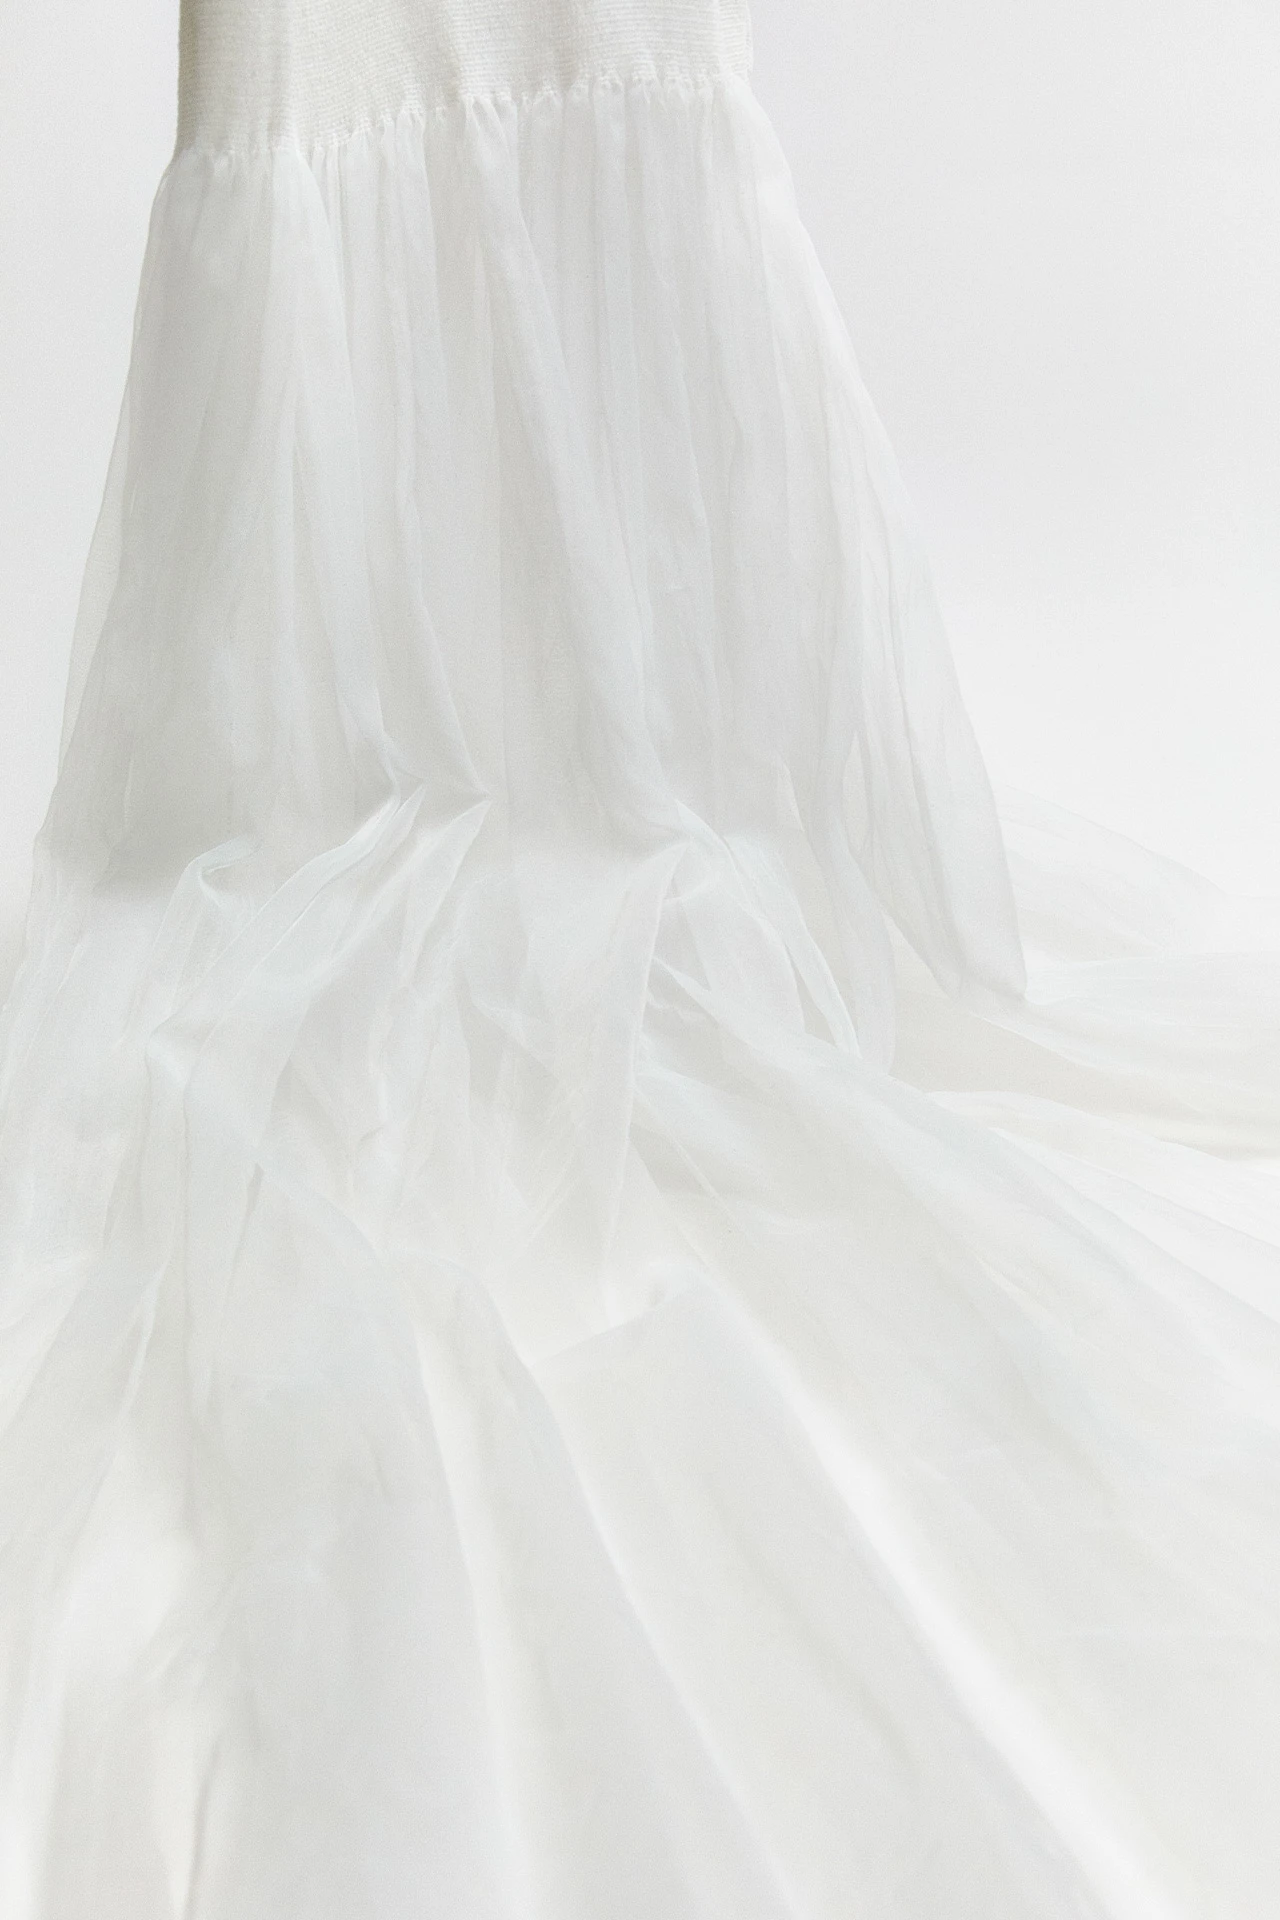 Miista-charlotta-white-dress-02